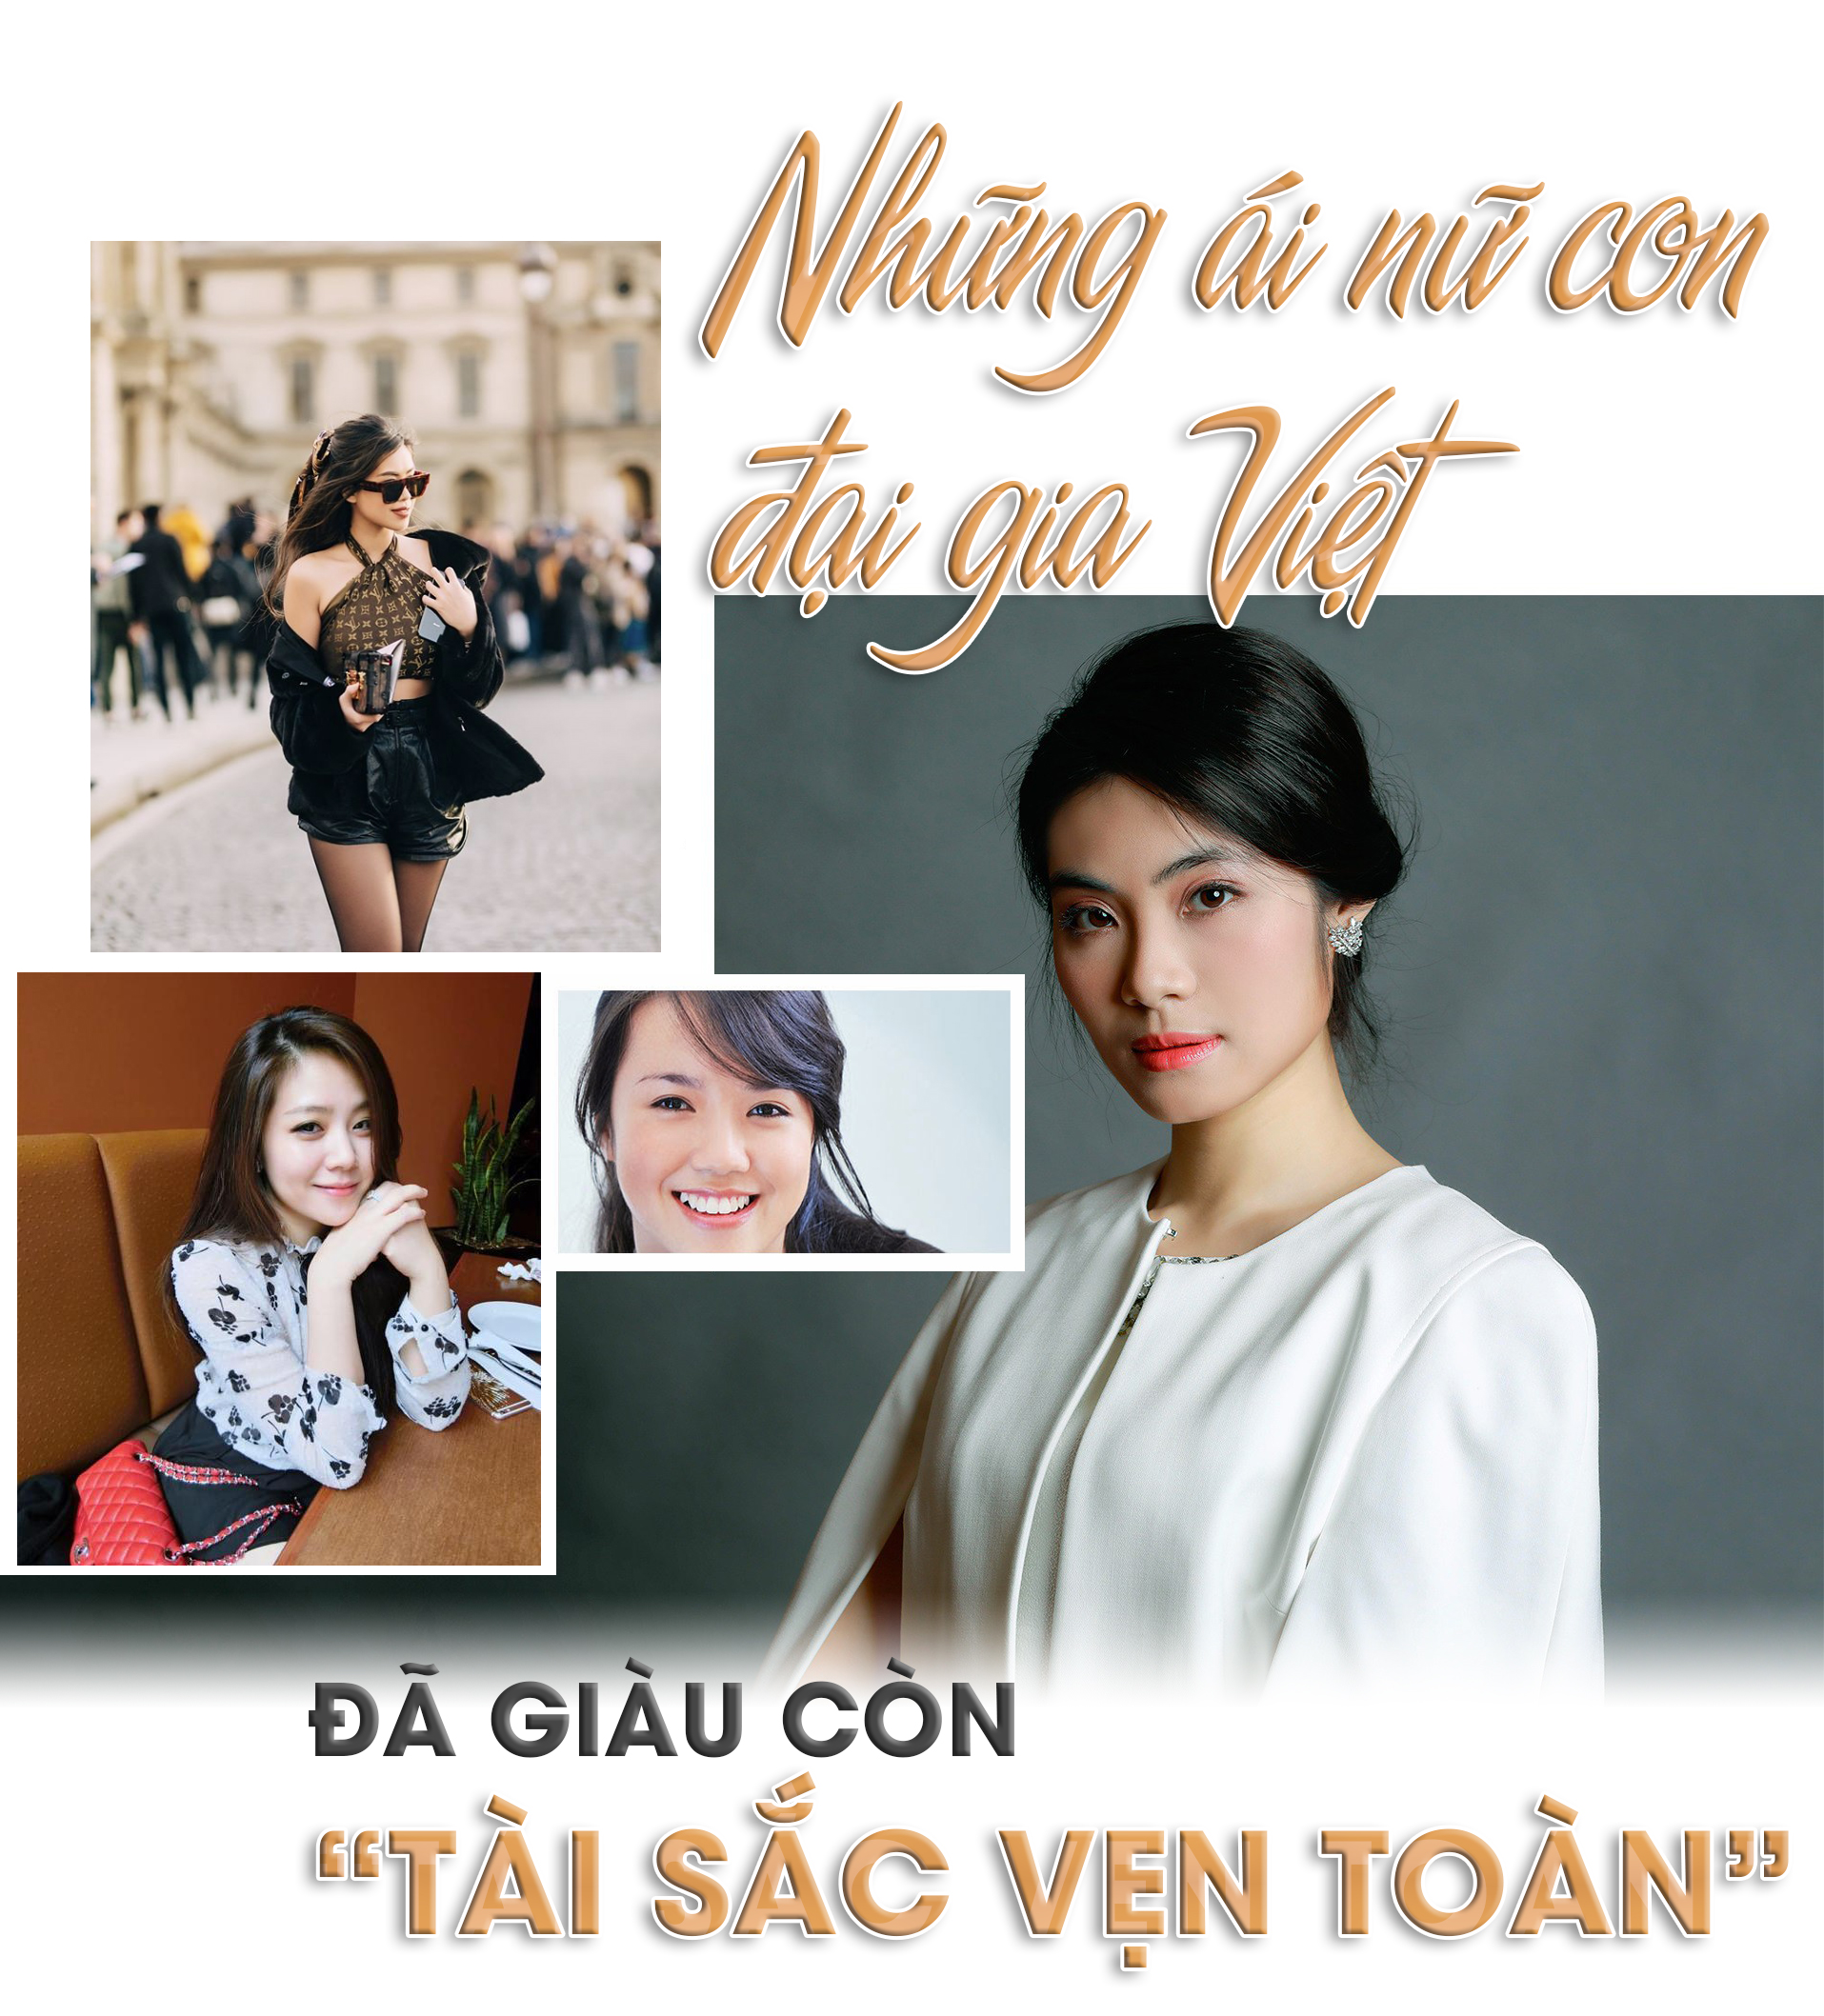 Những ái nữ con đại gia Việt: Đã giàu còn “tài sắc vẹn toàn” - 1